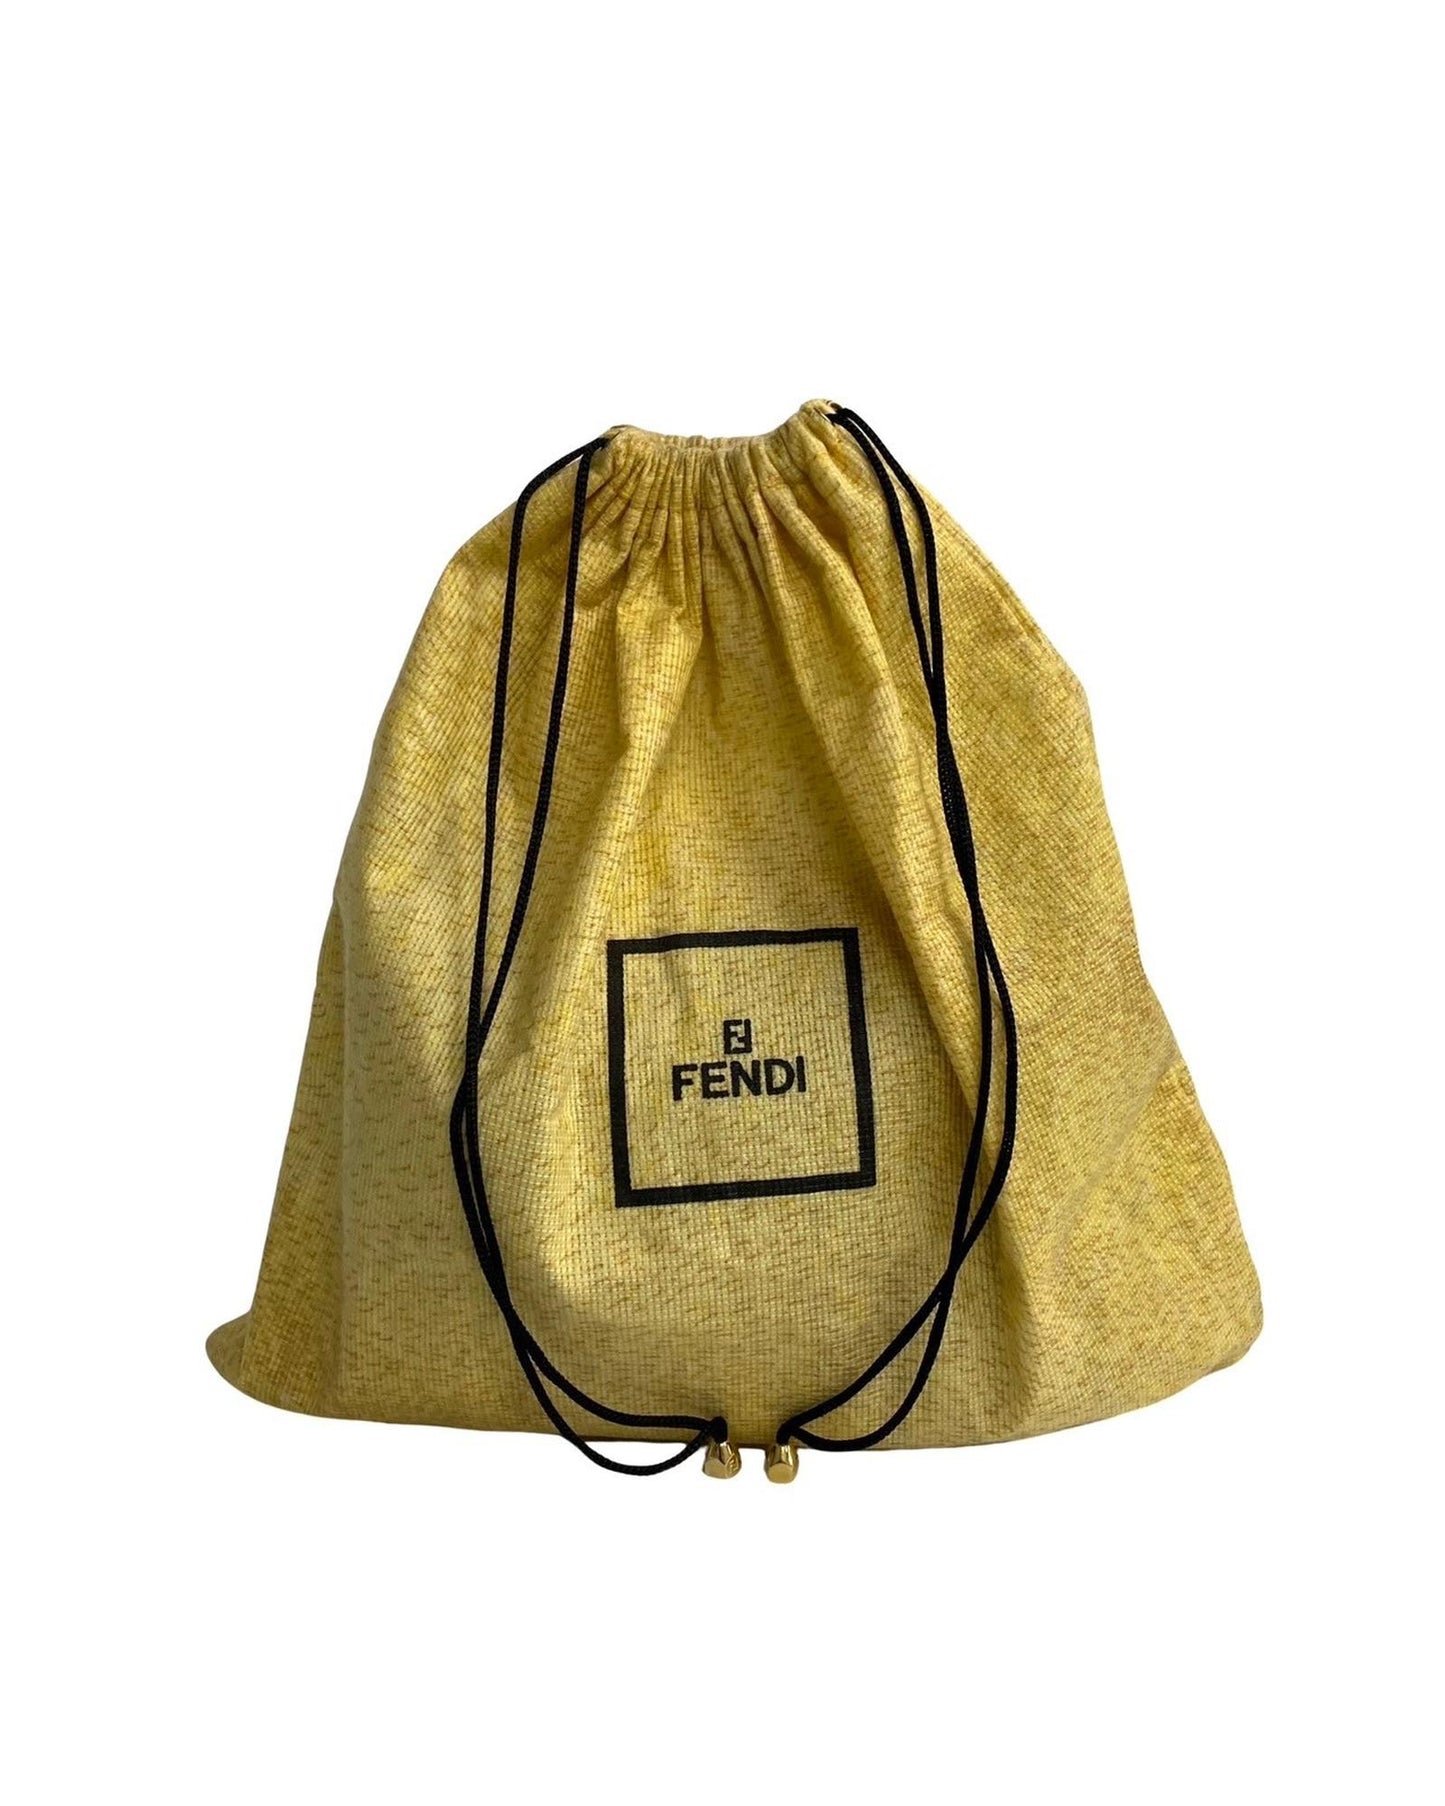 Fendi Women's Convertible Push Lock Box Bag in Brown in Brown